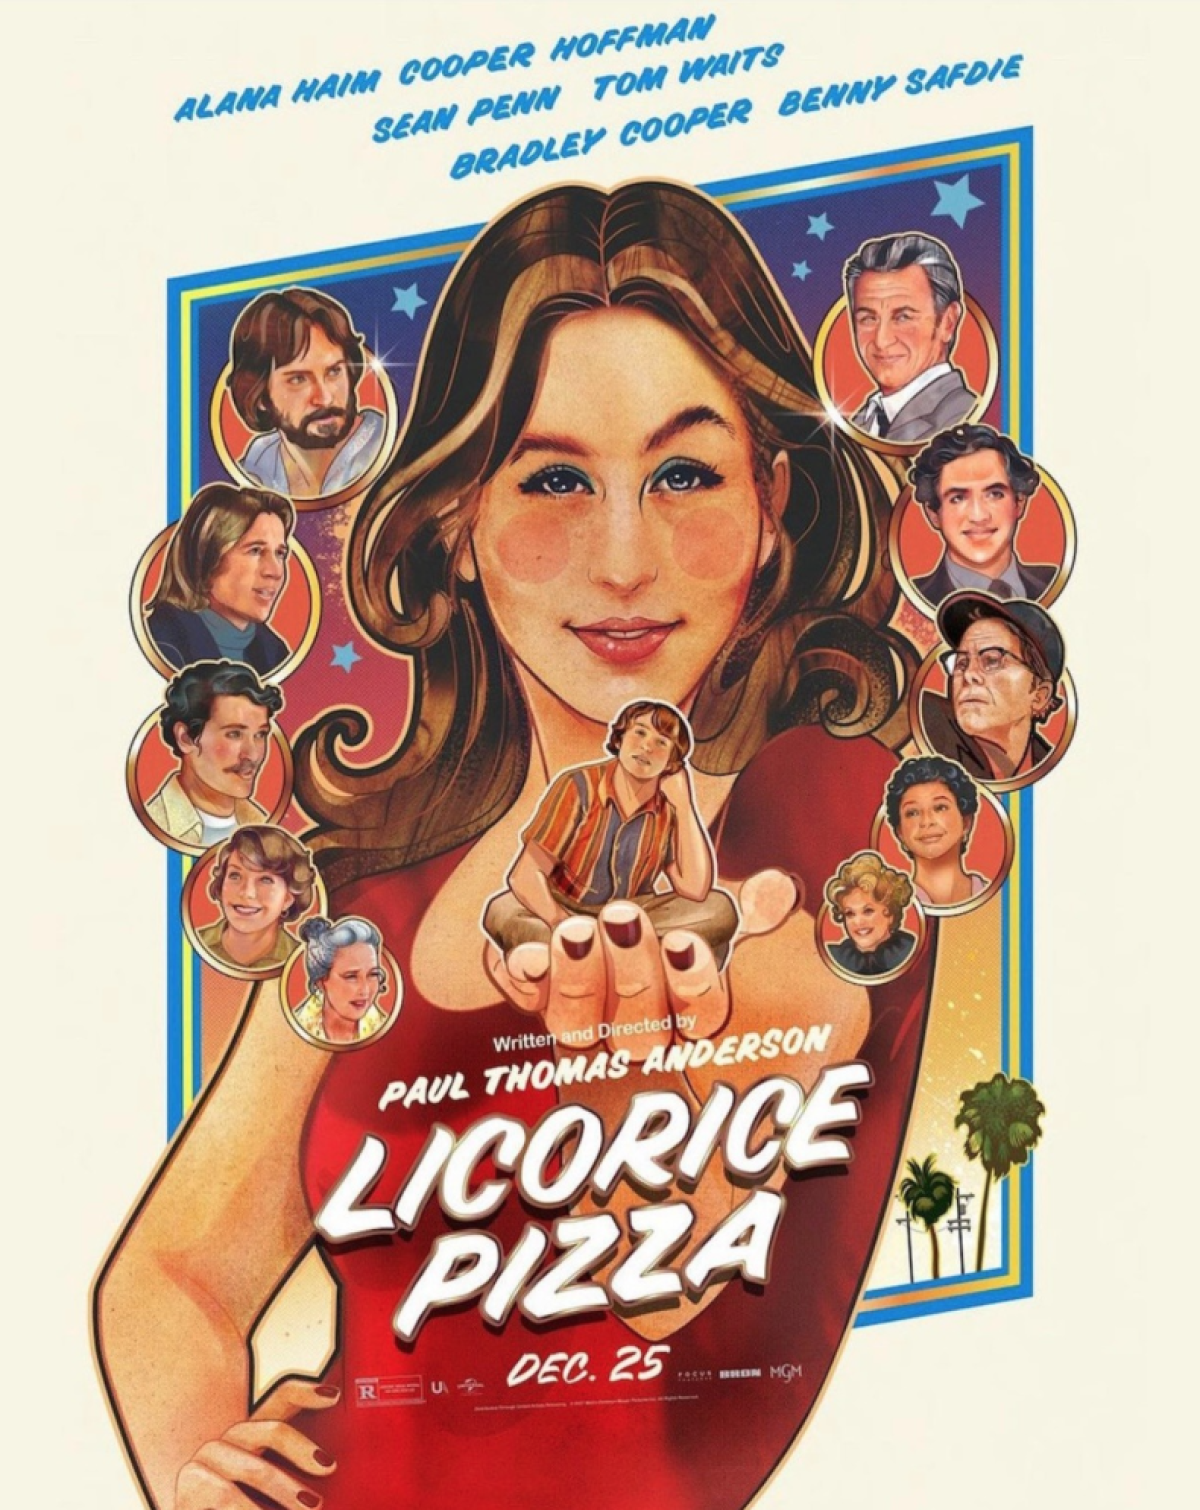 El póster de la película "Licorice Pizza".